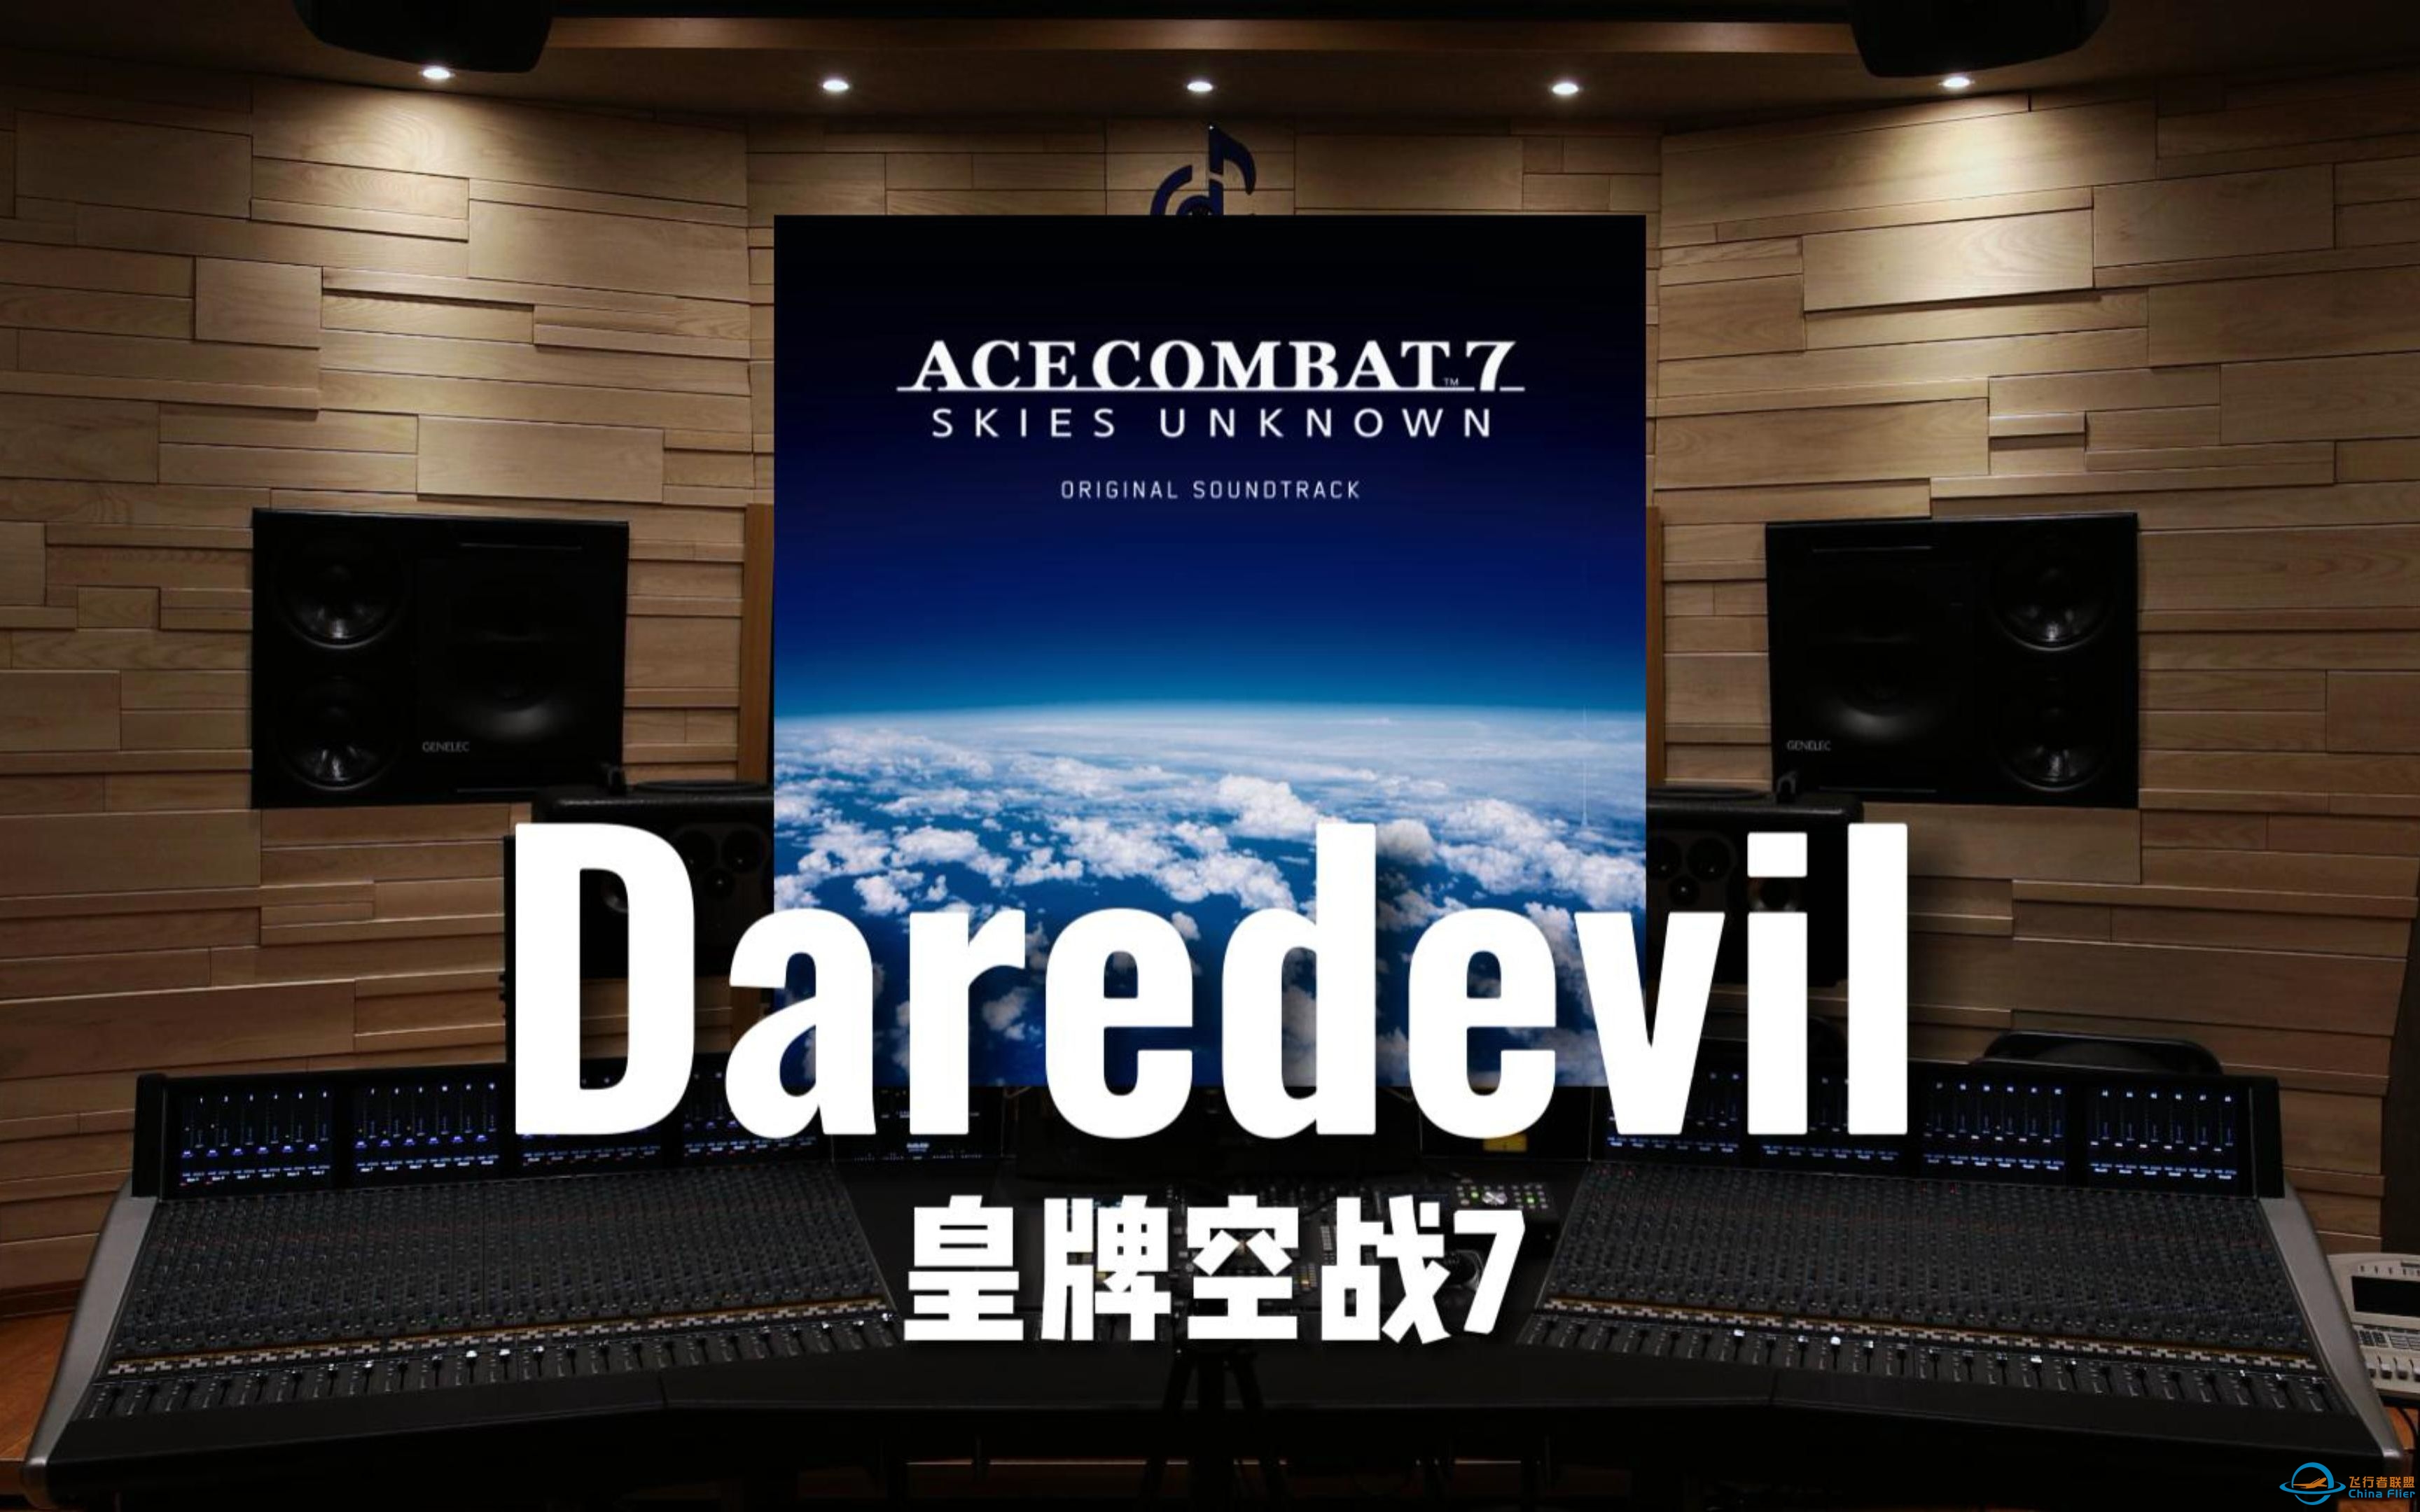 【皇牌空战7】百万级录音棚听《Daredevil》游戏《皇牌空战7 未知空域》OST【Hi-Res】-3626 